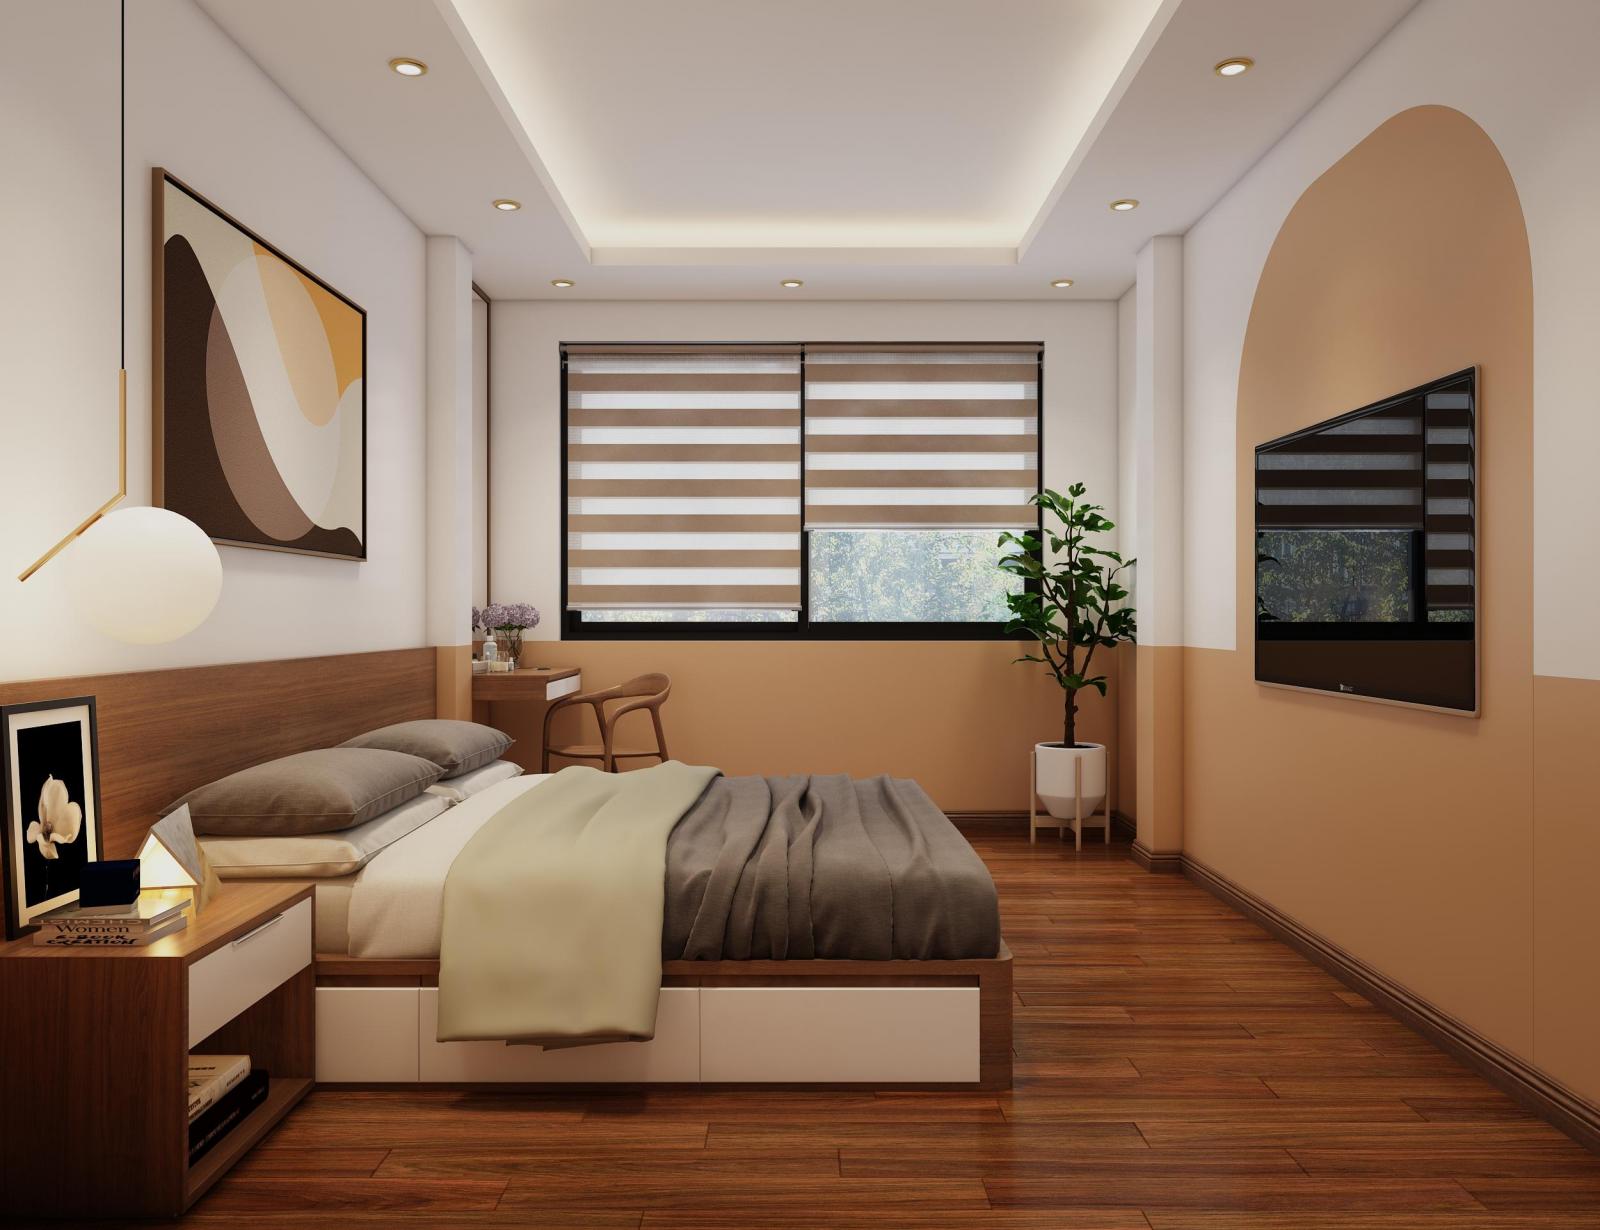 hình ảnh toàn cảnh phòng ngủ nhà phố với sàn gỗ, tranh tường đầu giường, bàn trang điểm cạnh cửa sổ, cây xanh trang trí, tủ đầu giường.